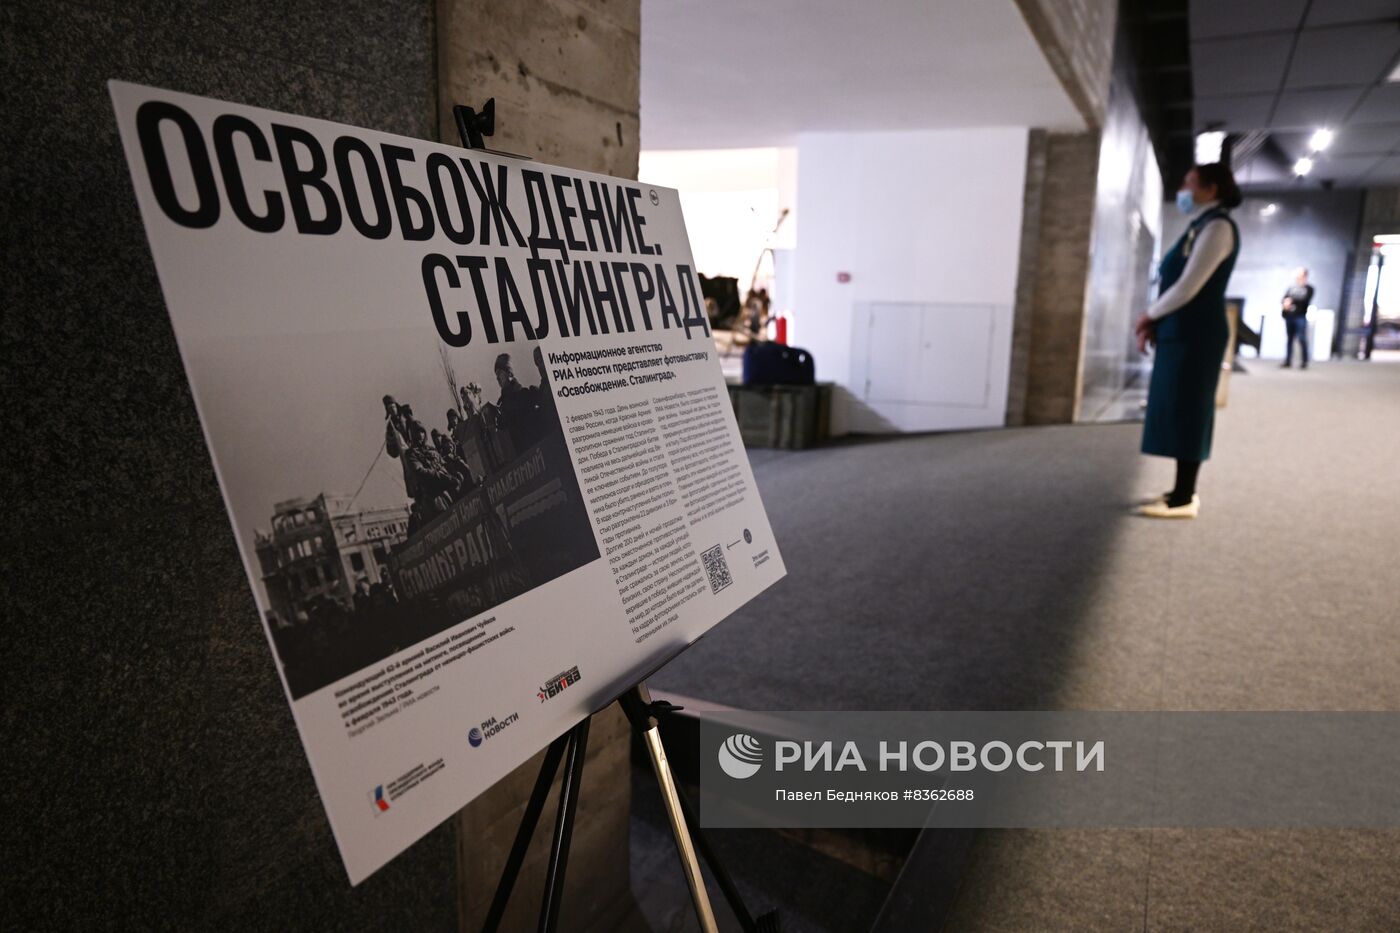 Открытие фотовыставки "Освобождение. Сталинград"